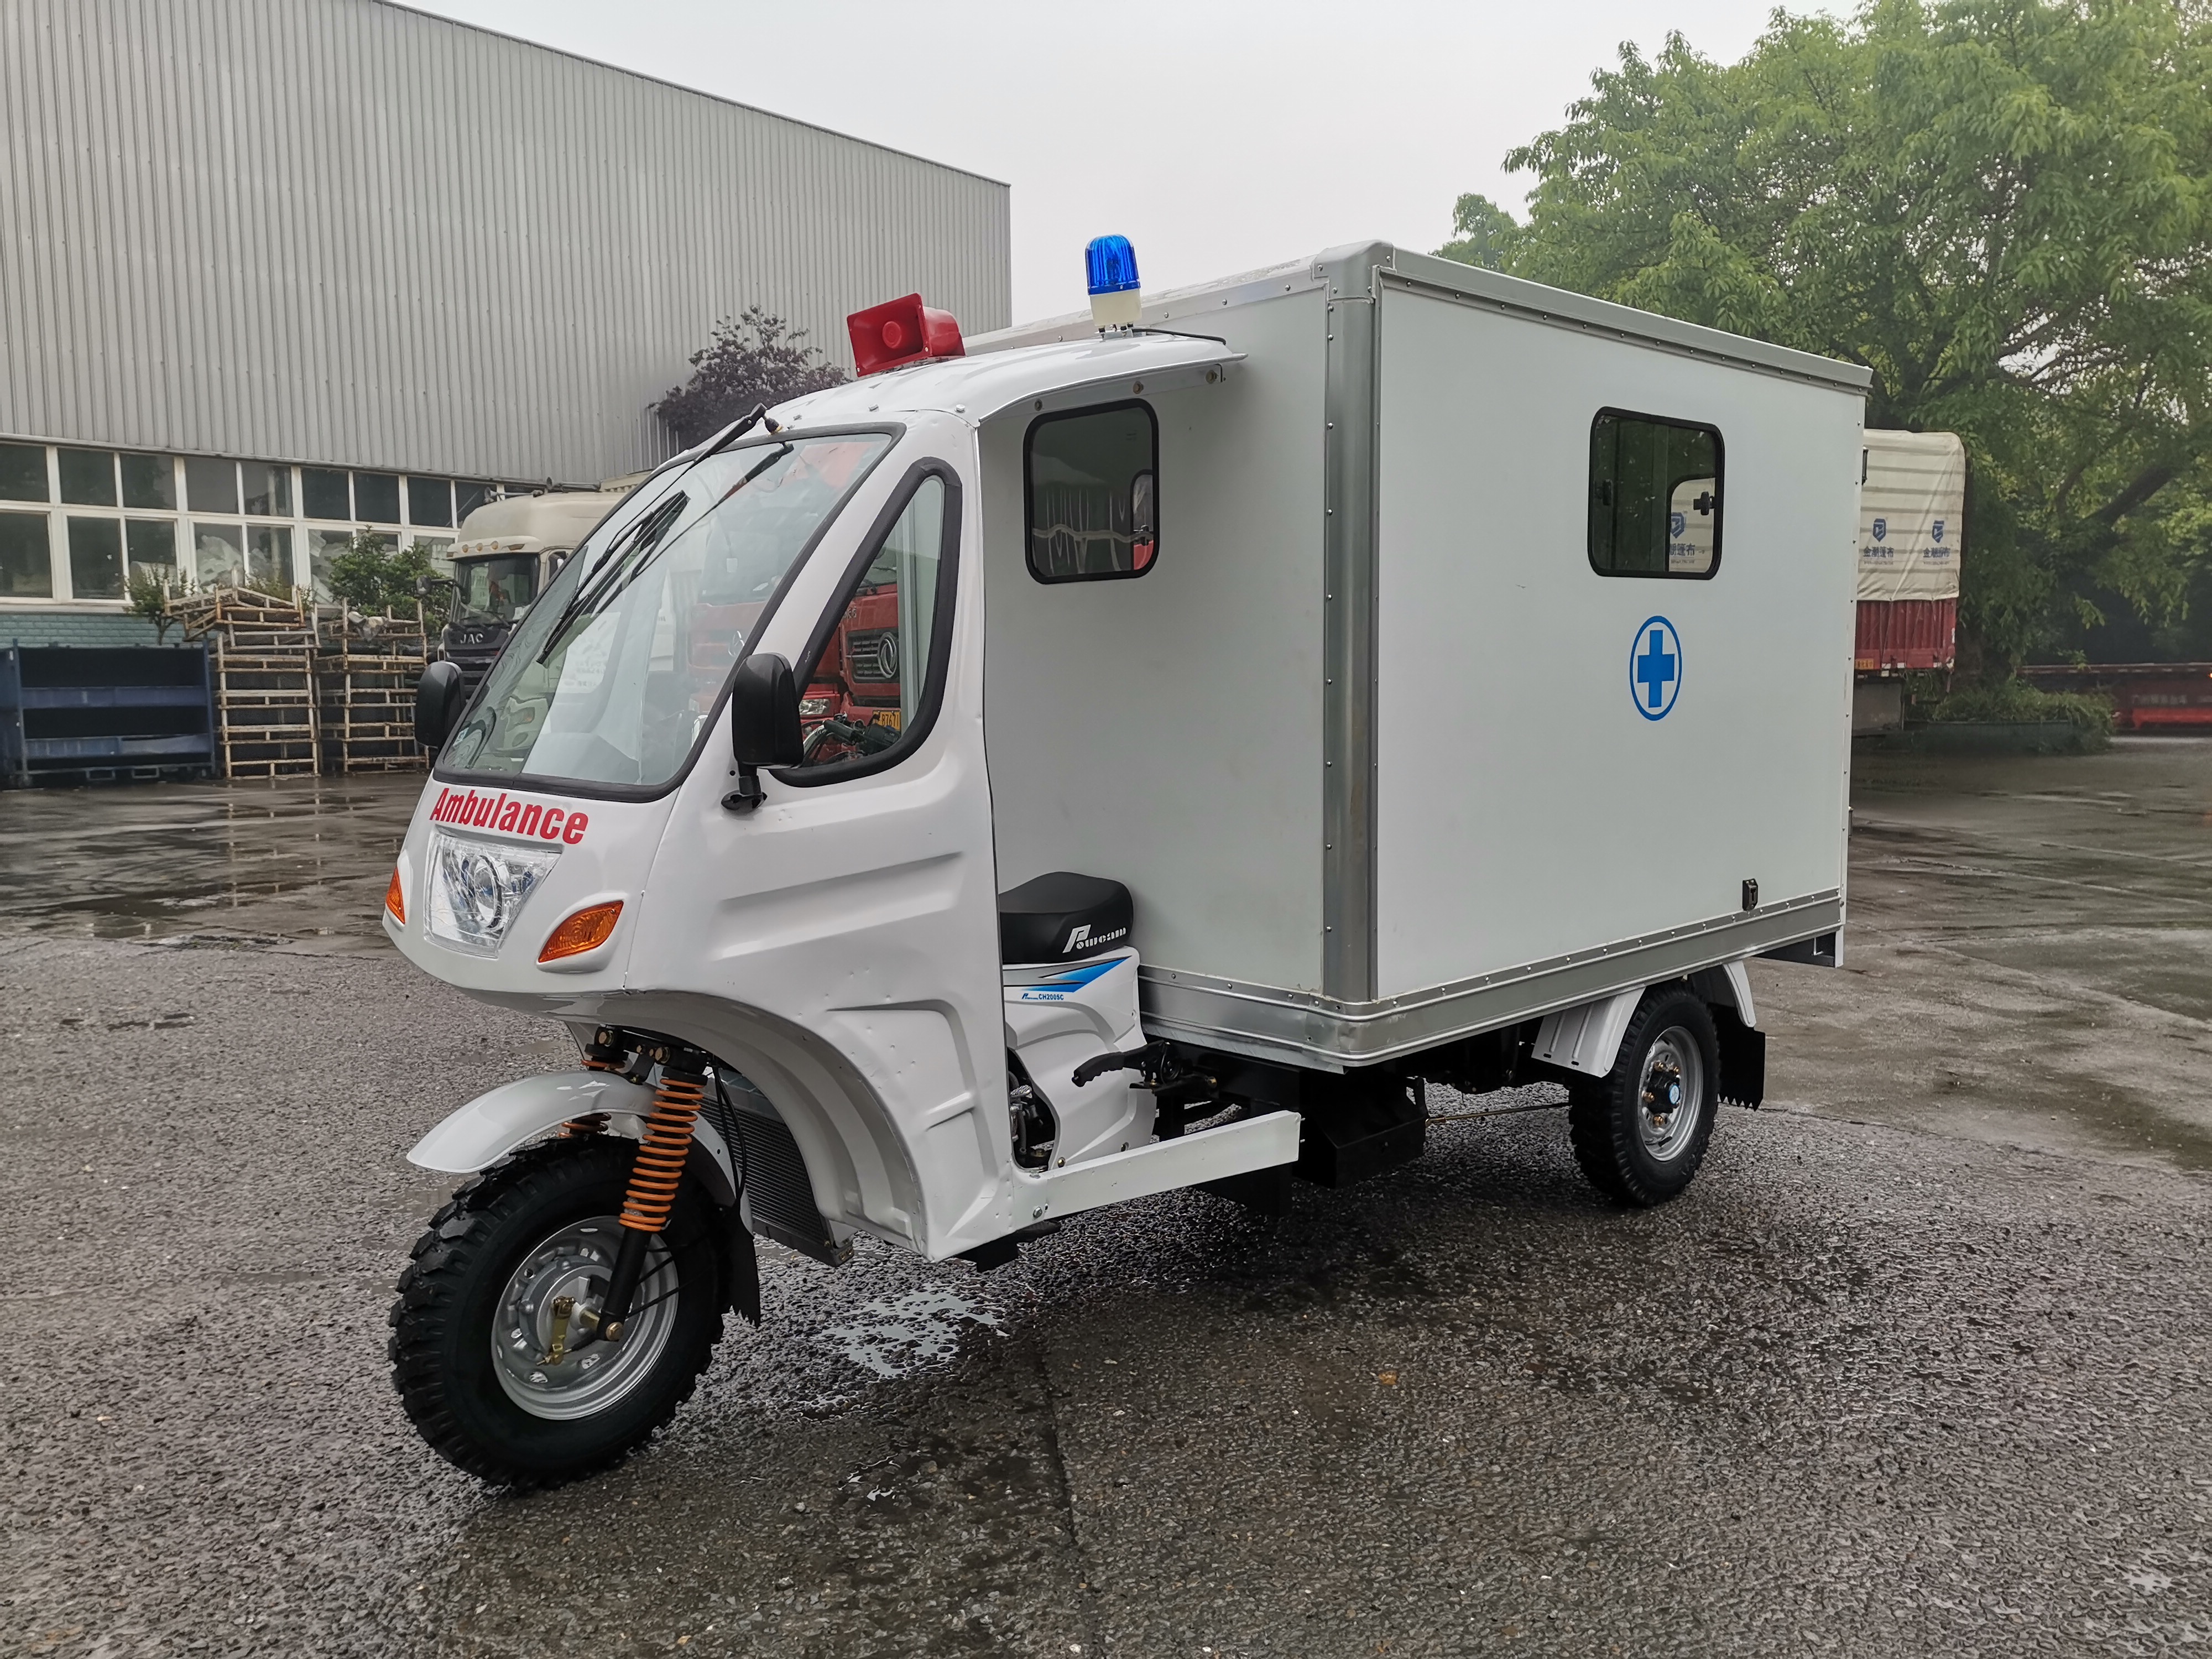 Potente coche de ambulancia de tres ruedas